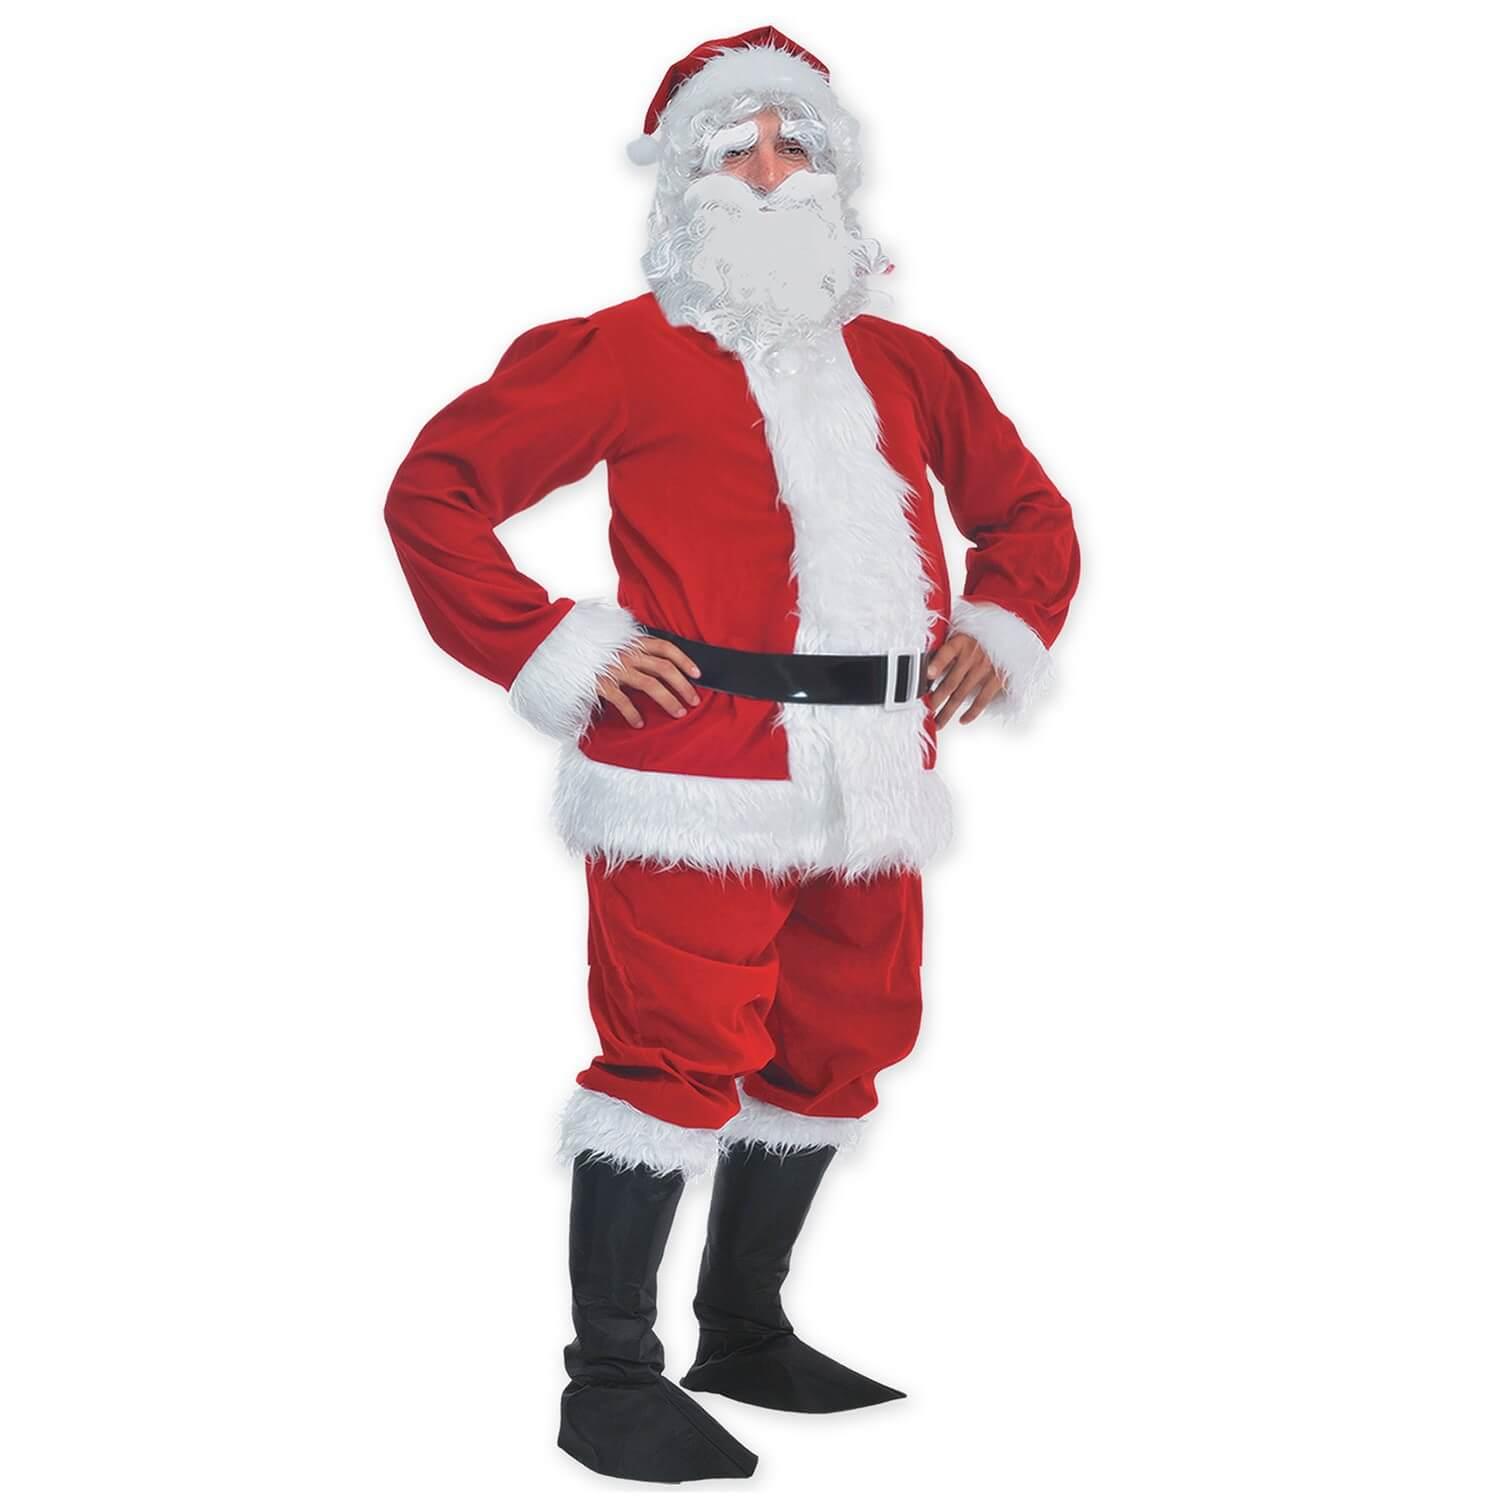 Costume Père Noël Qualité professionnelle - Homme